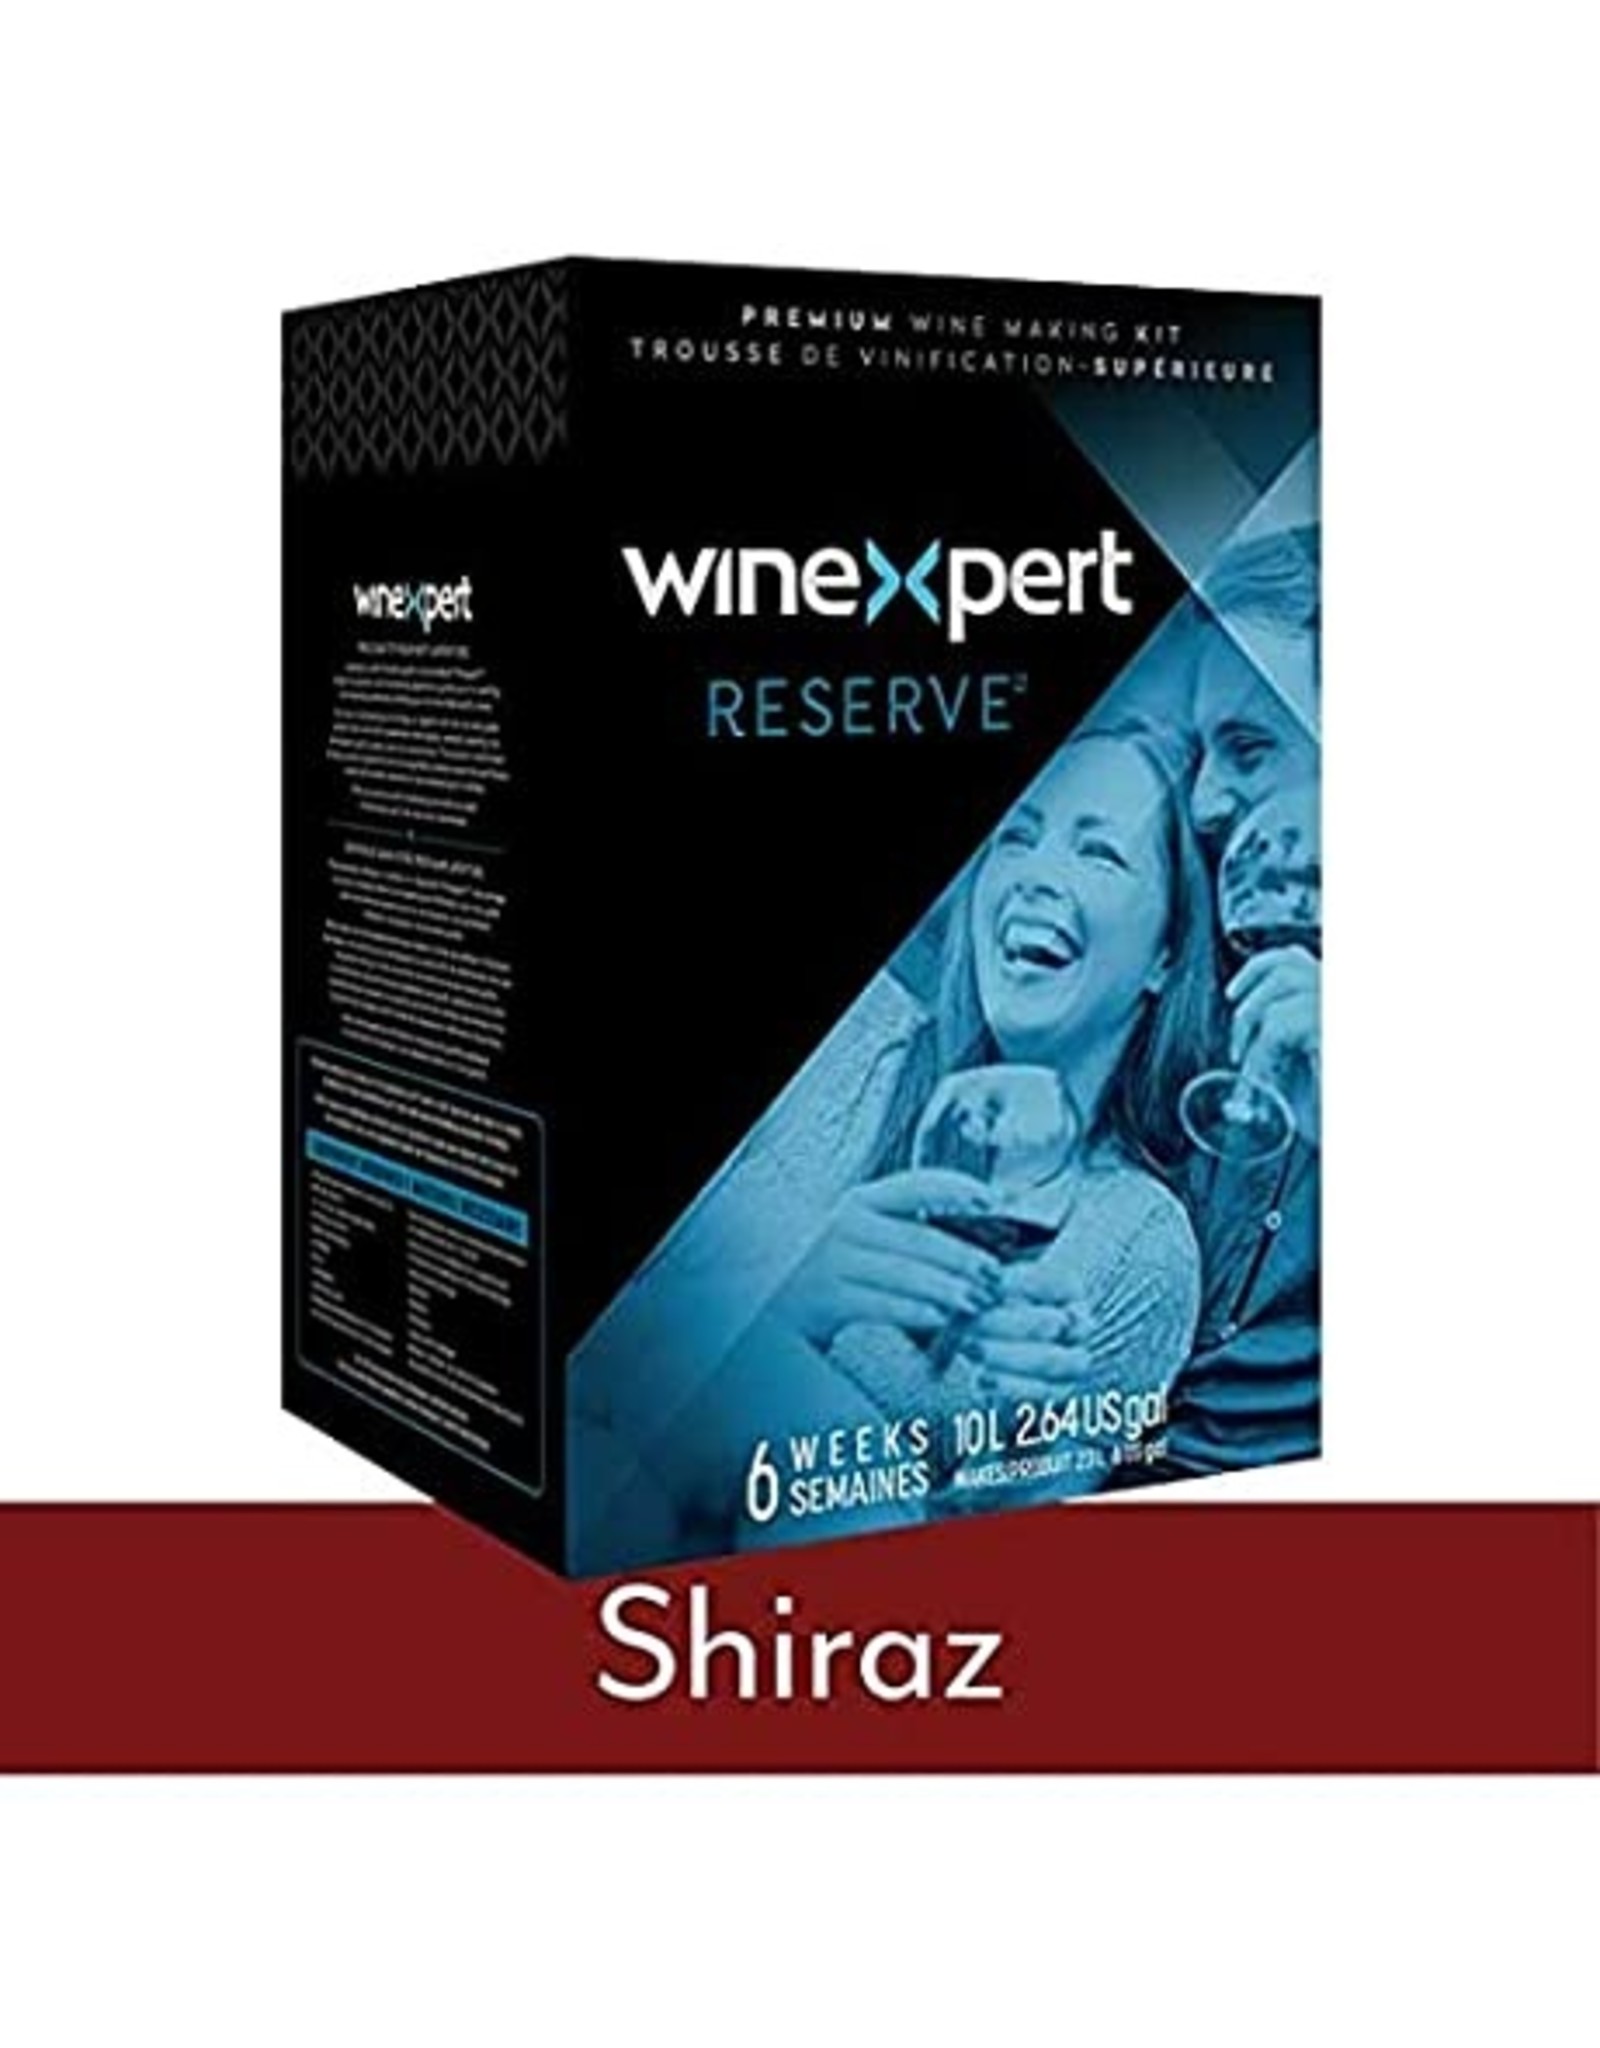 Reserve Winexpert Reserve Shiraz Australia Wine Kit